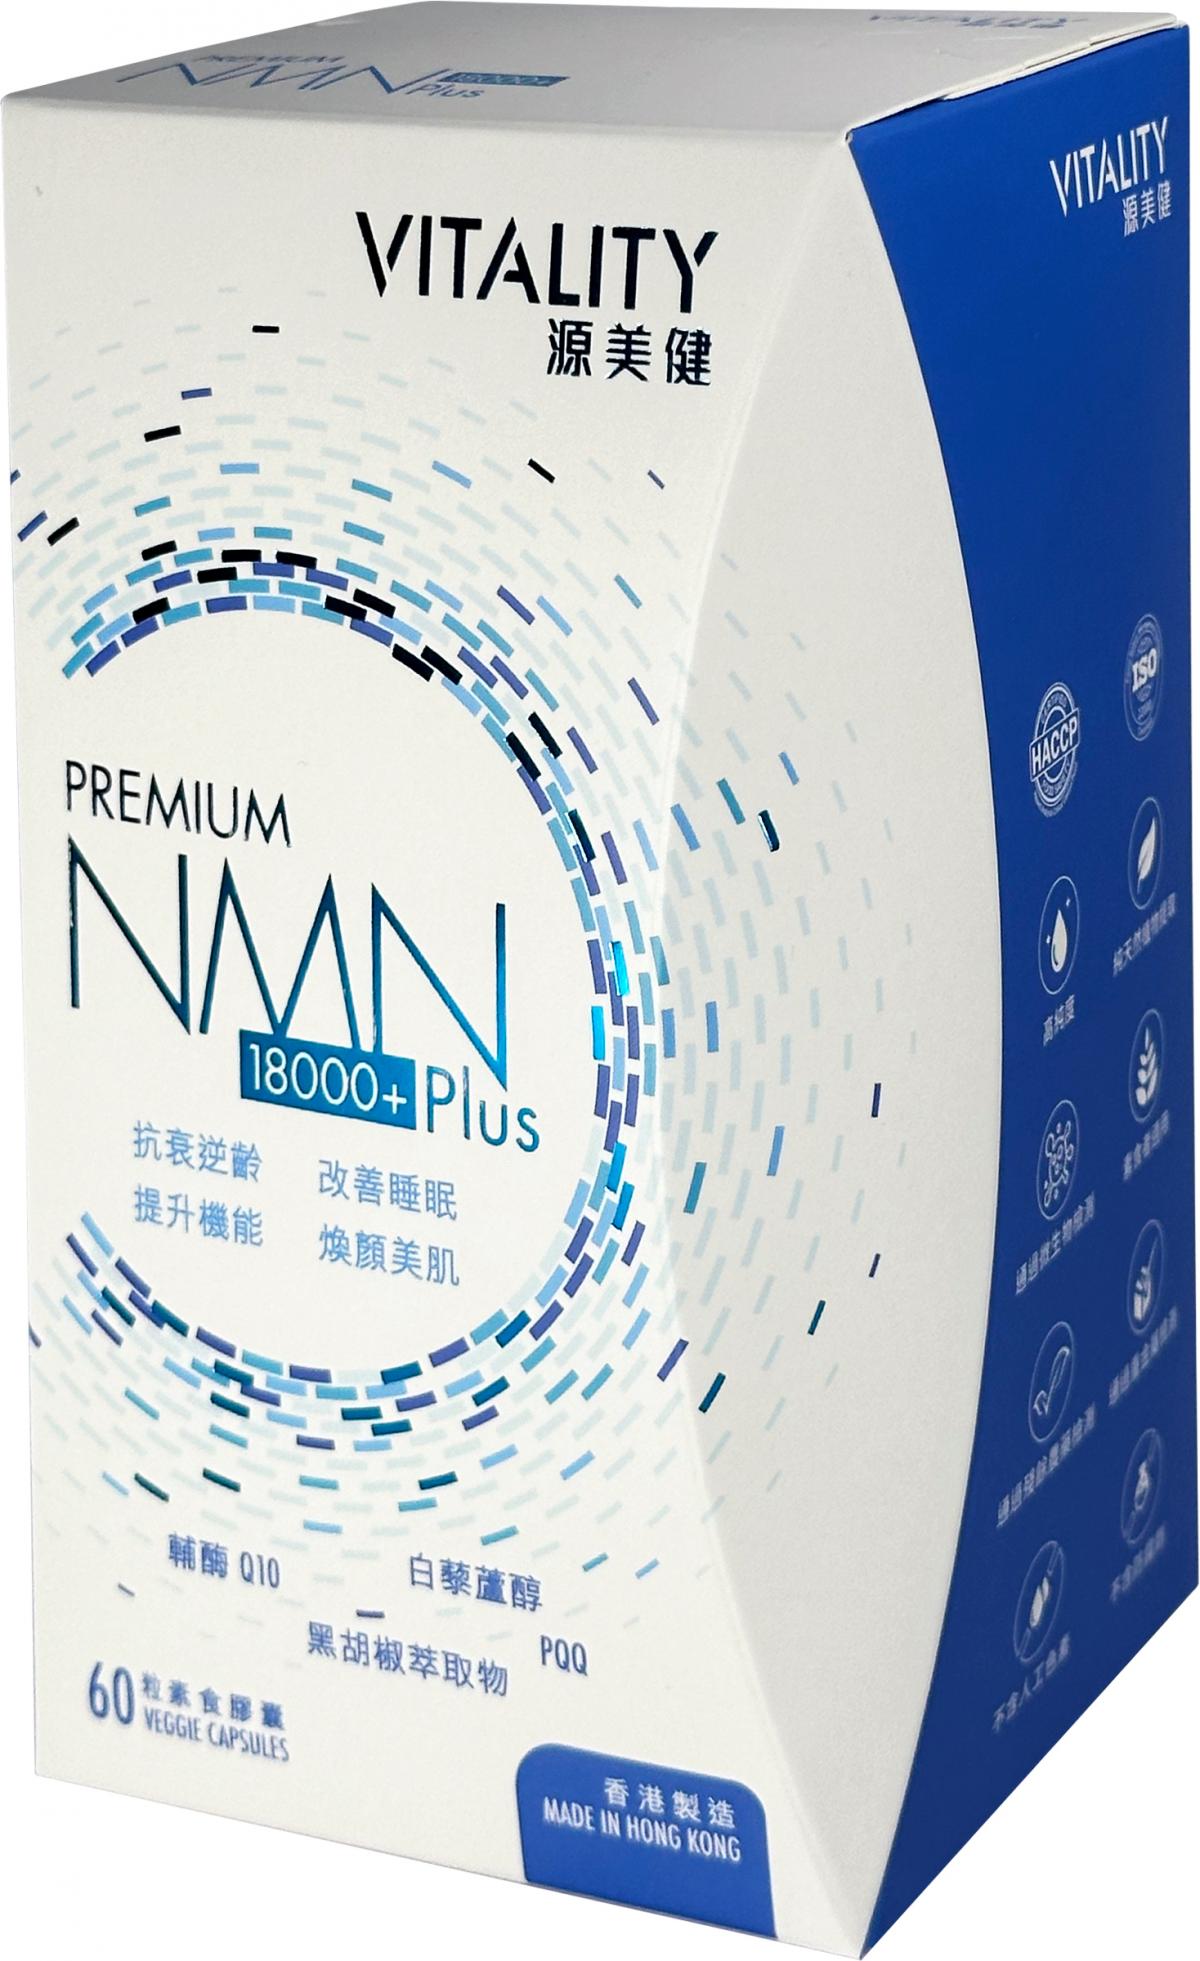 Premium NMN 18000+ Plus